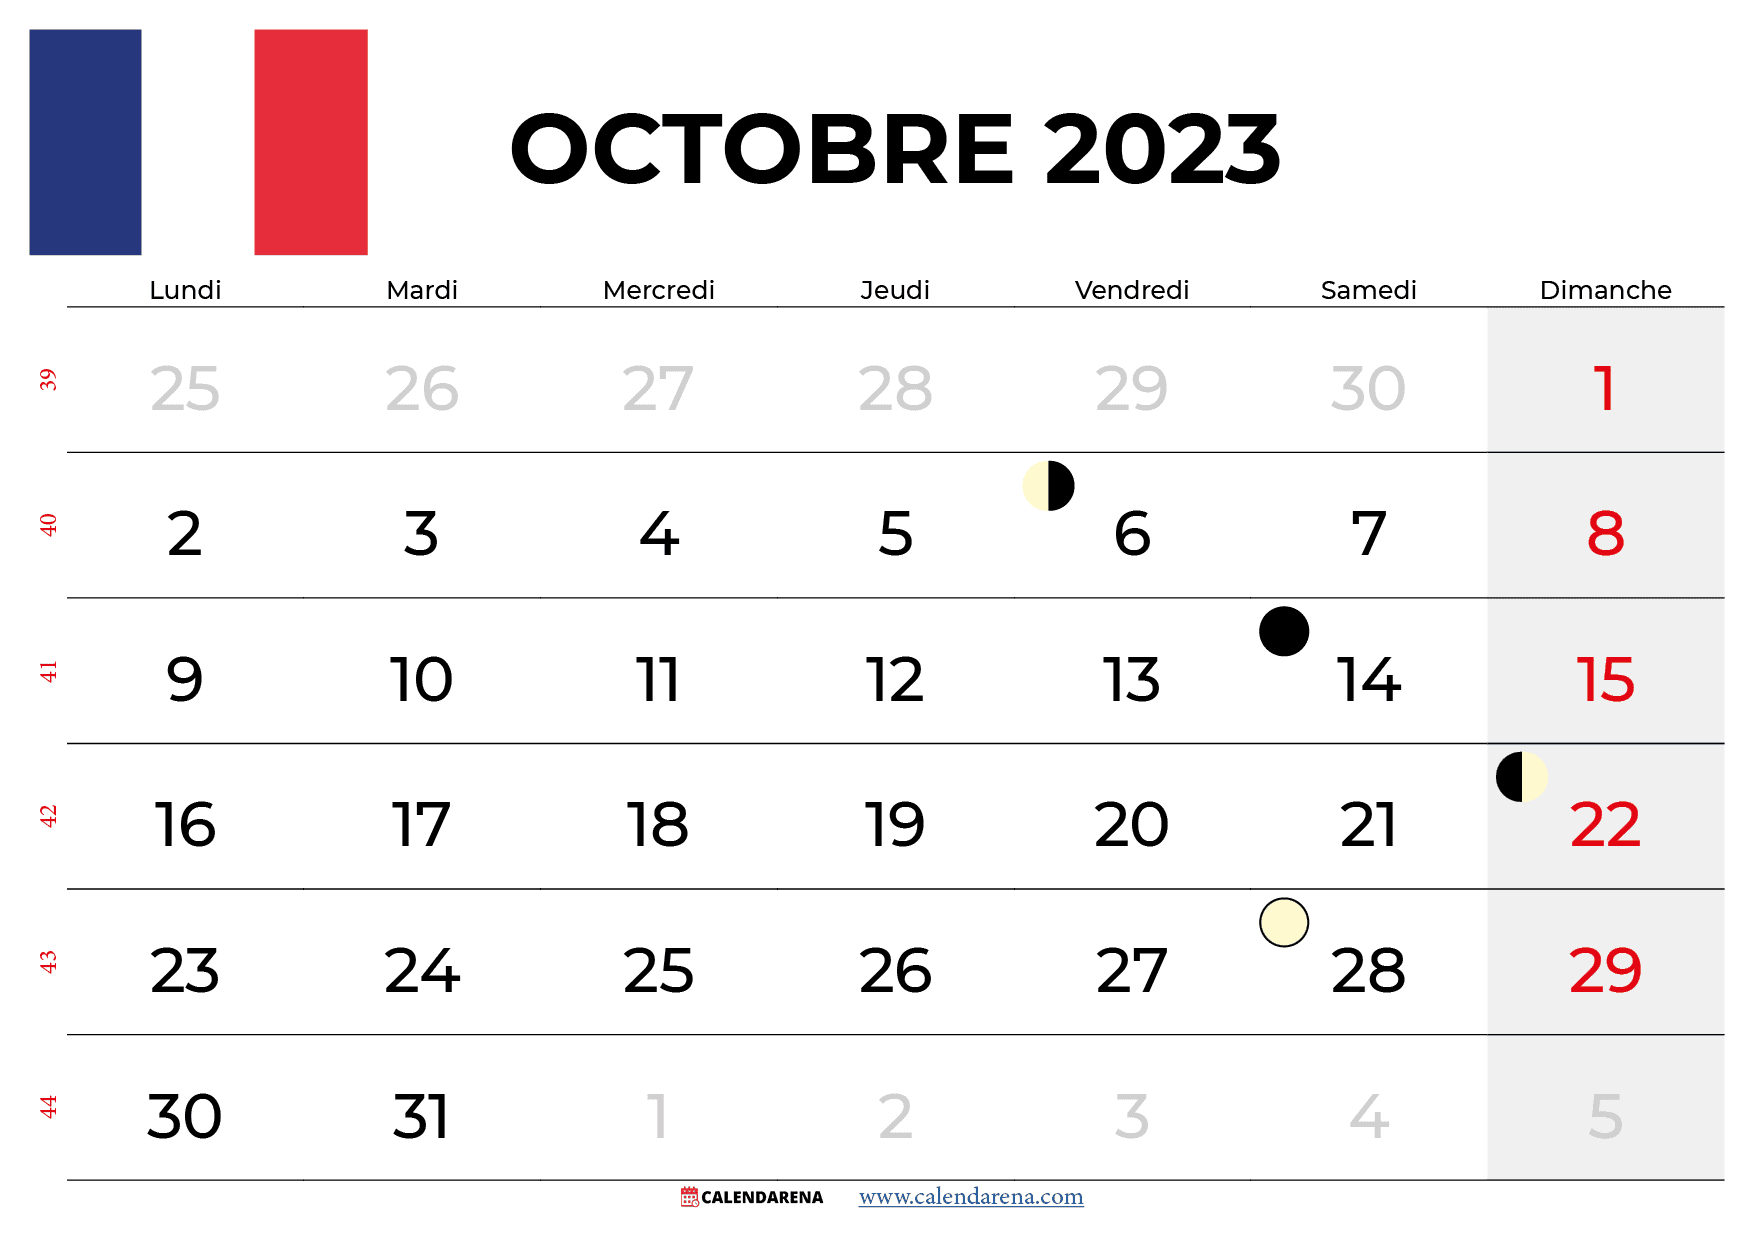 calendrier octobre 2023 france